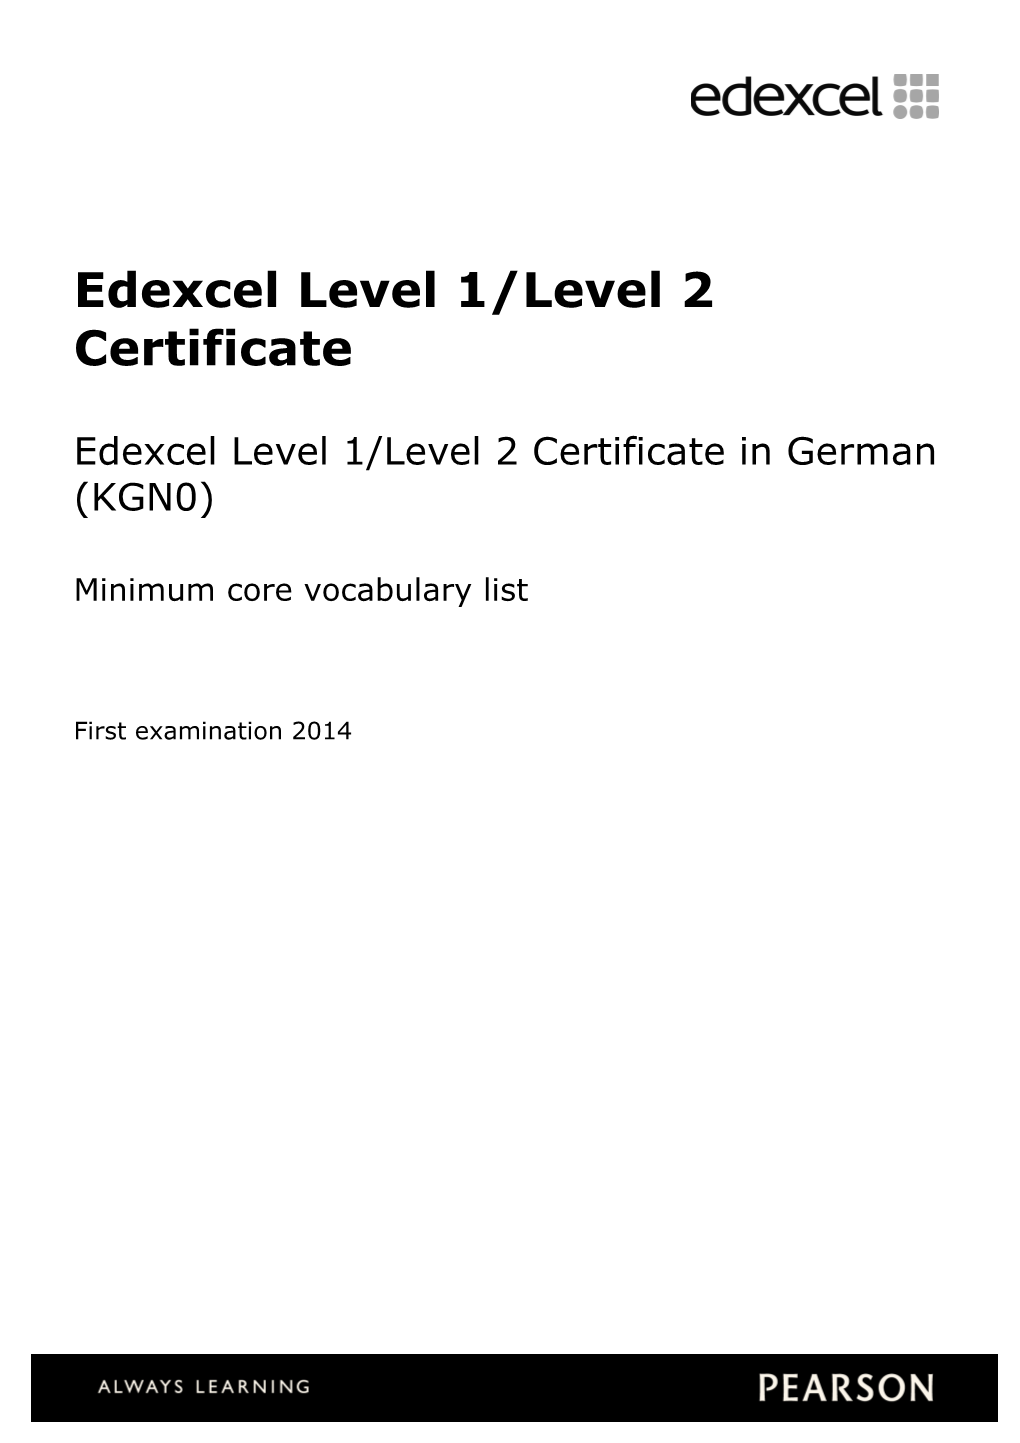 Edexcel Level 1/Level 2 Certificate in German Minimum Core Vocabulary